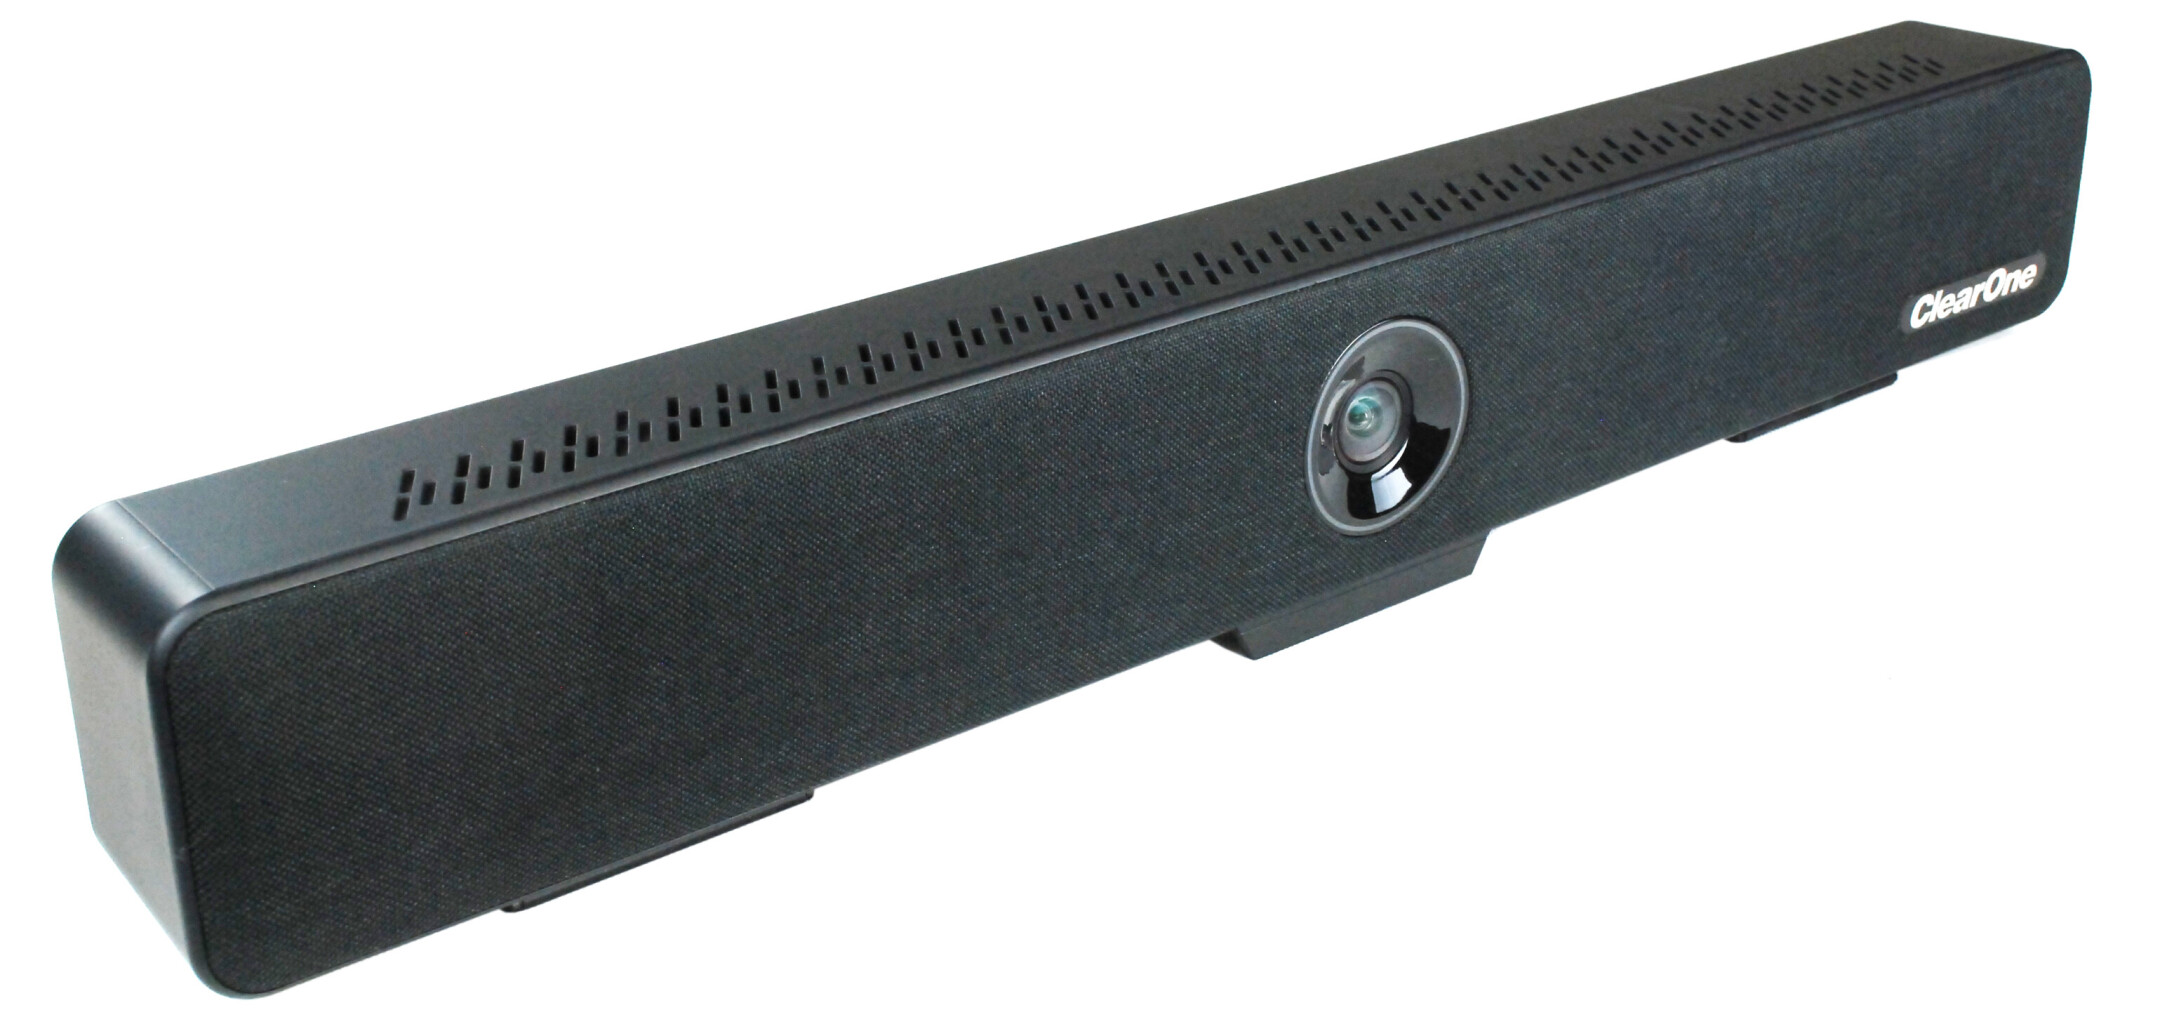 ClearOne-Versa-Mediabar-Hochwertige-USB-Mediabar-fur-Huddle-und-kleinere-Raume